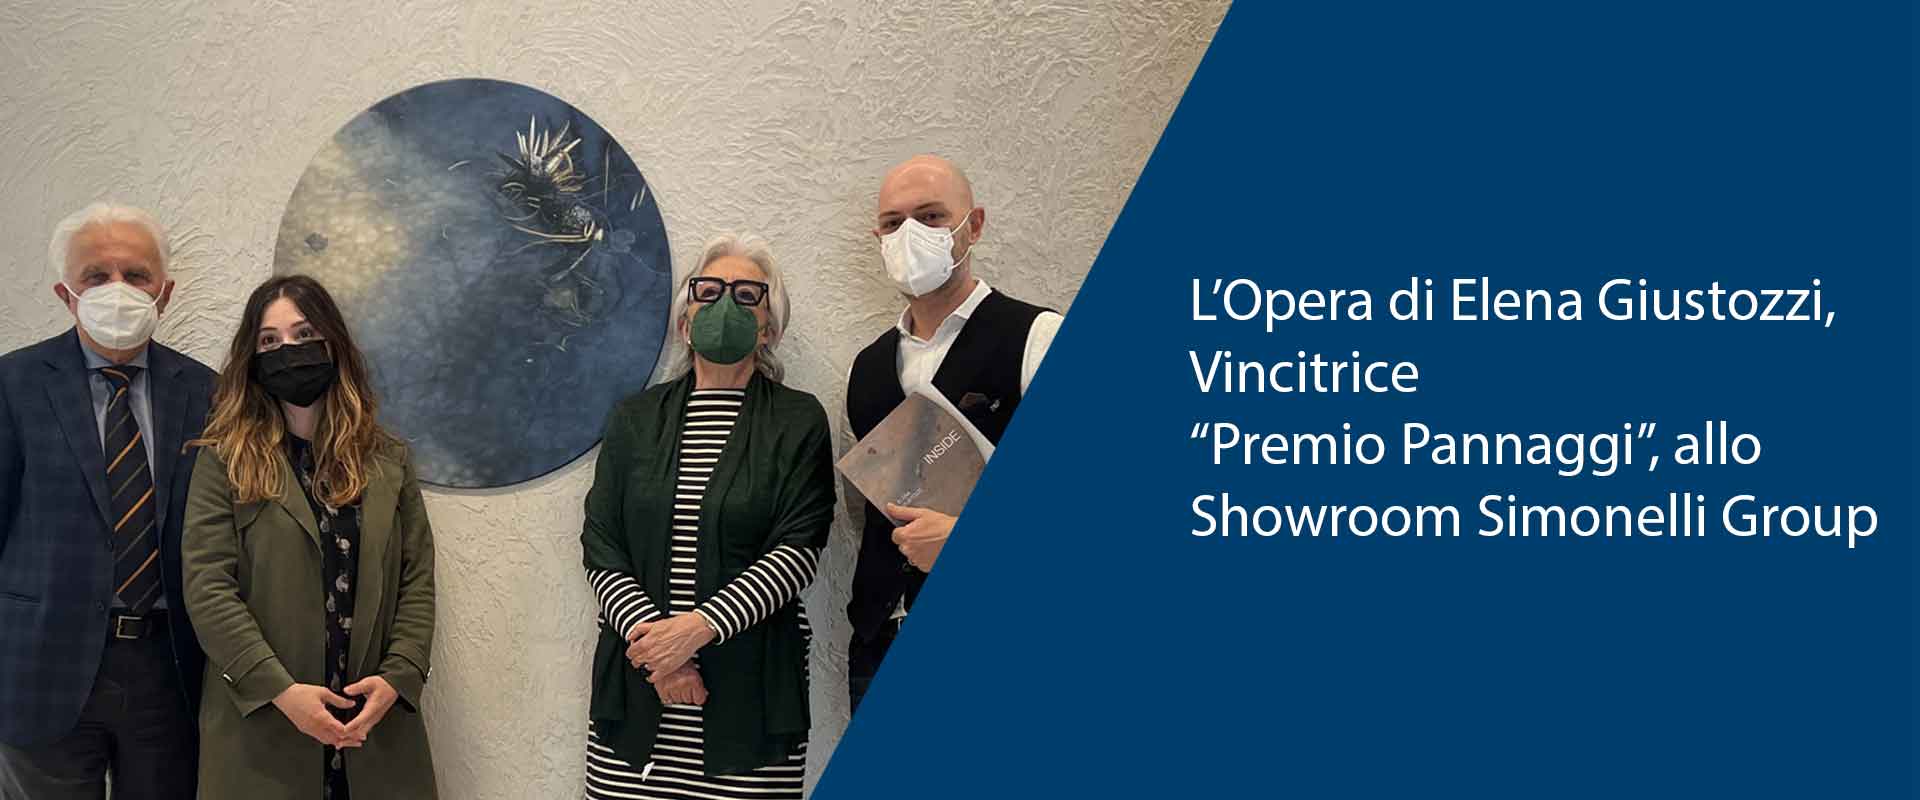 Opera di Elena Giustozzi, Vincitrice “Premio Pannaggi”, allo Showroom Simonelli Group